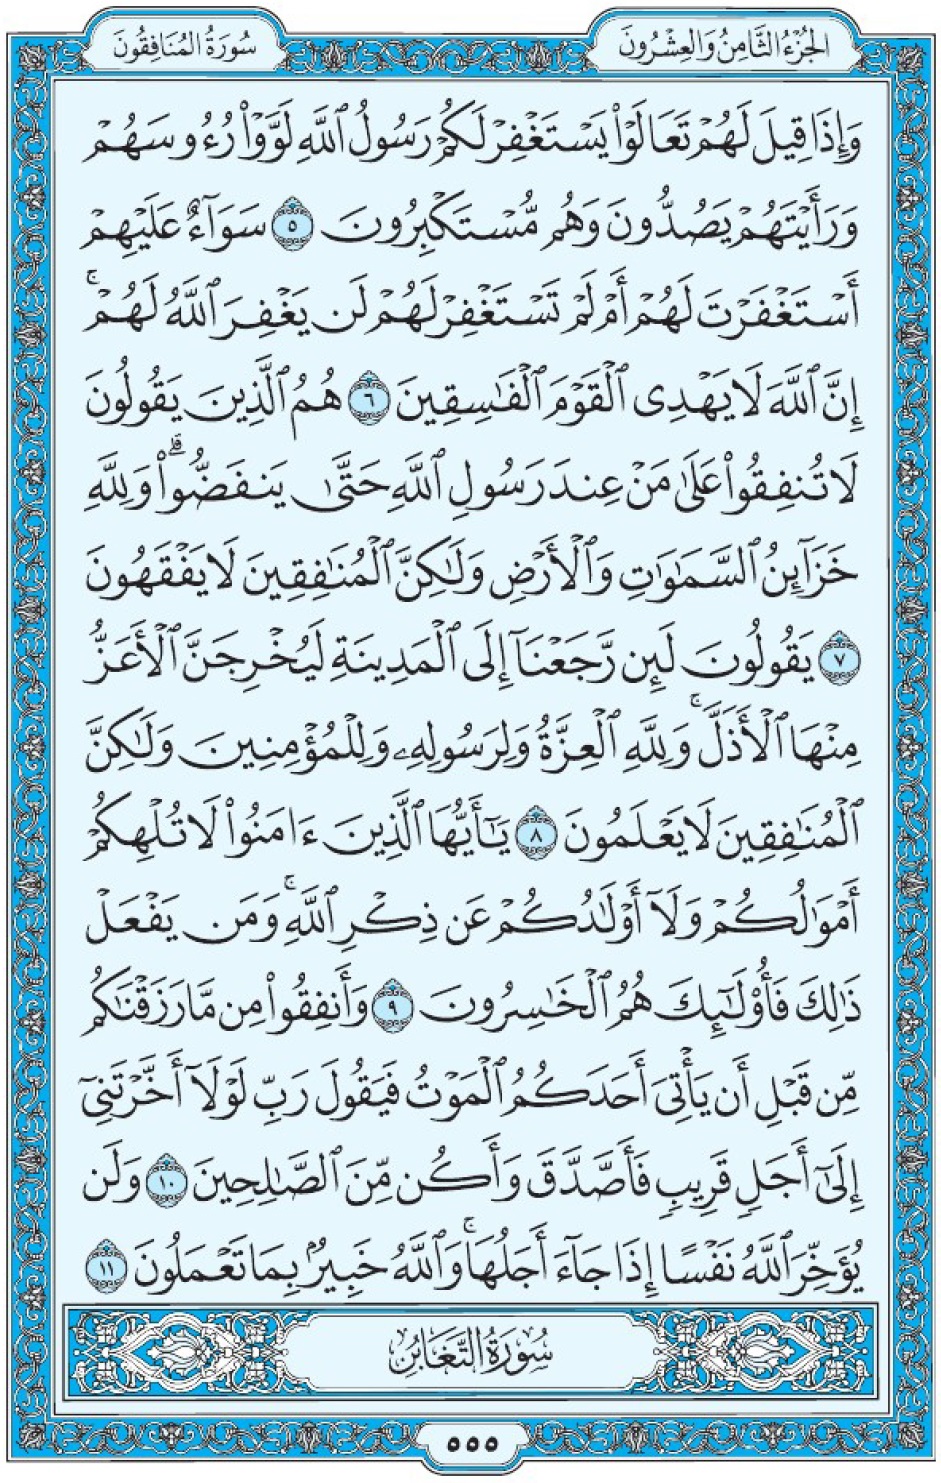 Коран Мединский мусхаф страница 555, аль-Мунафикун, аят 5-11